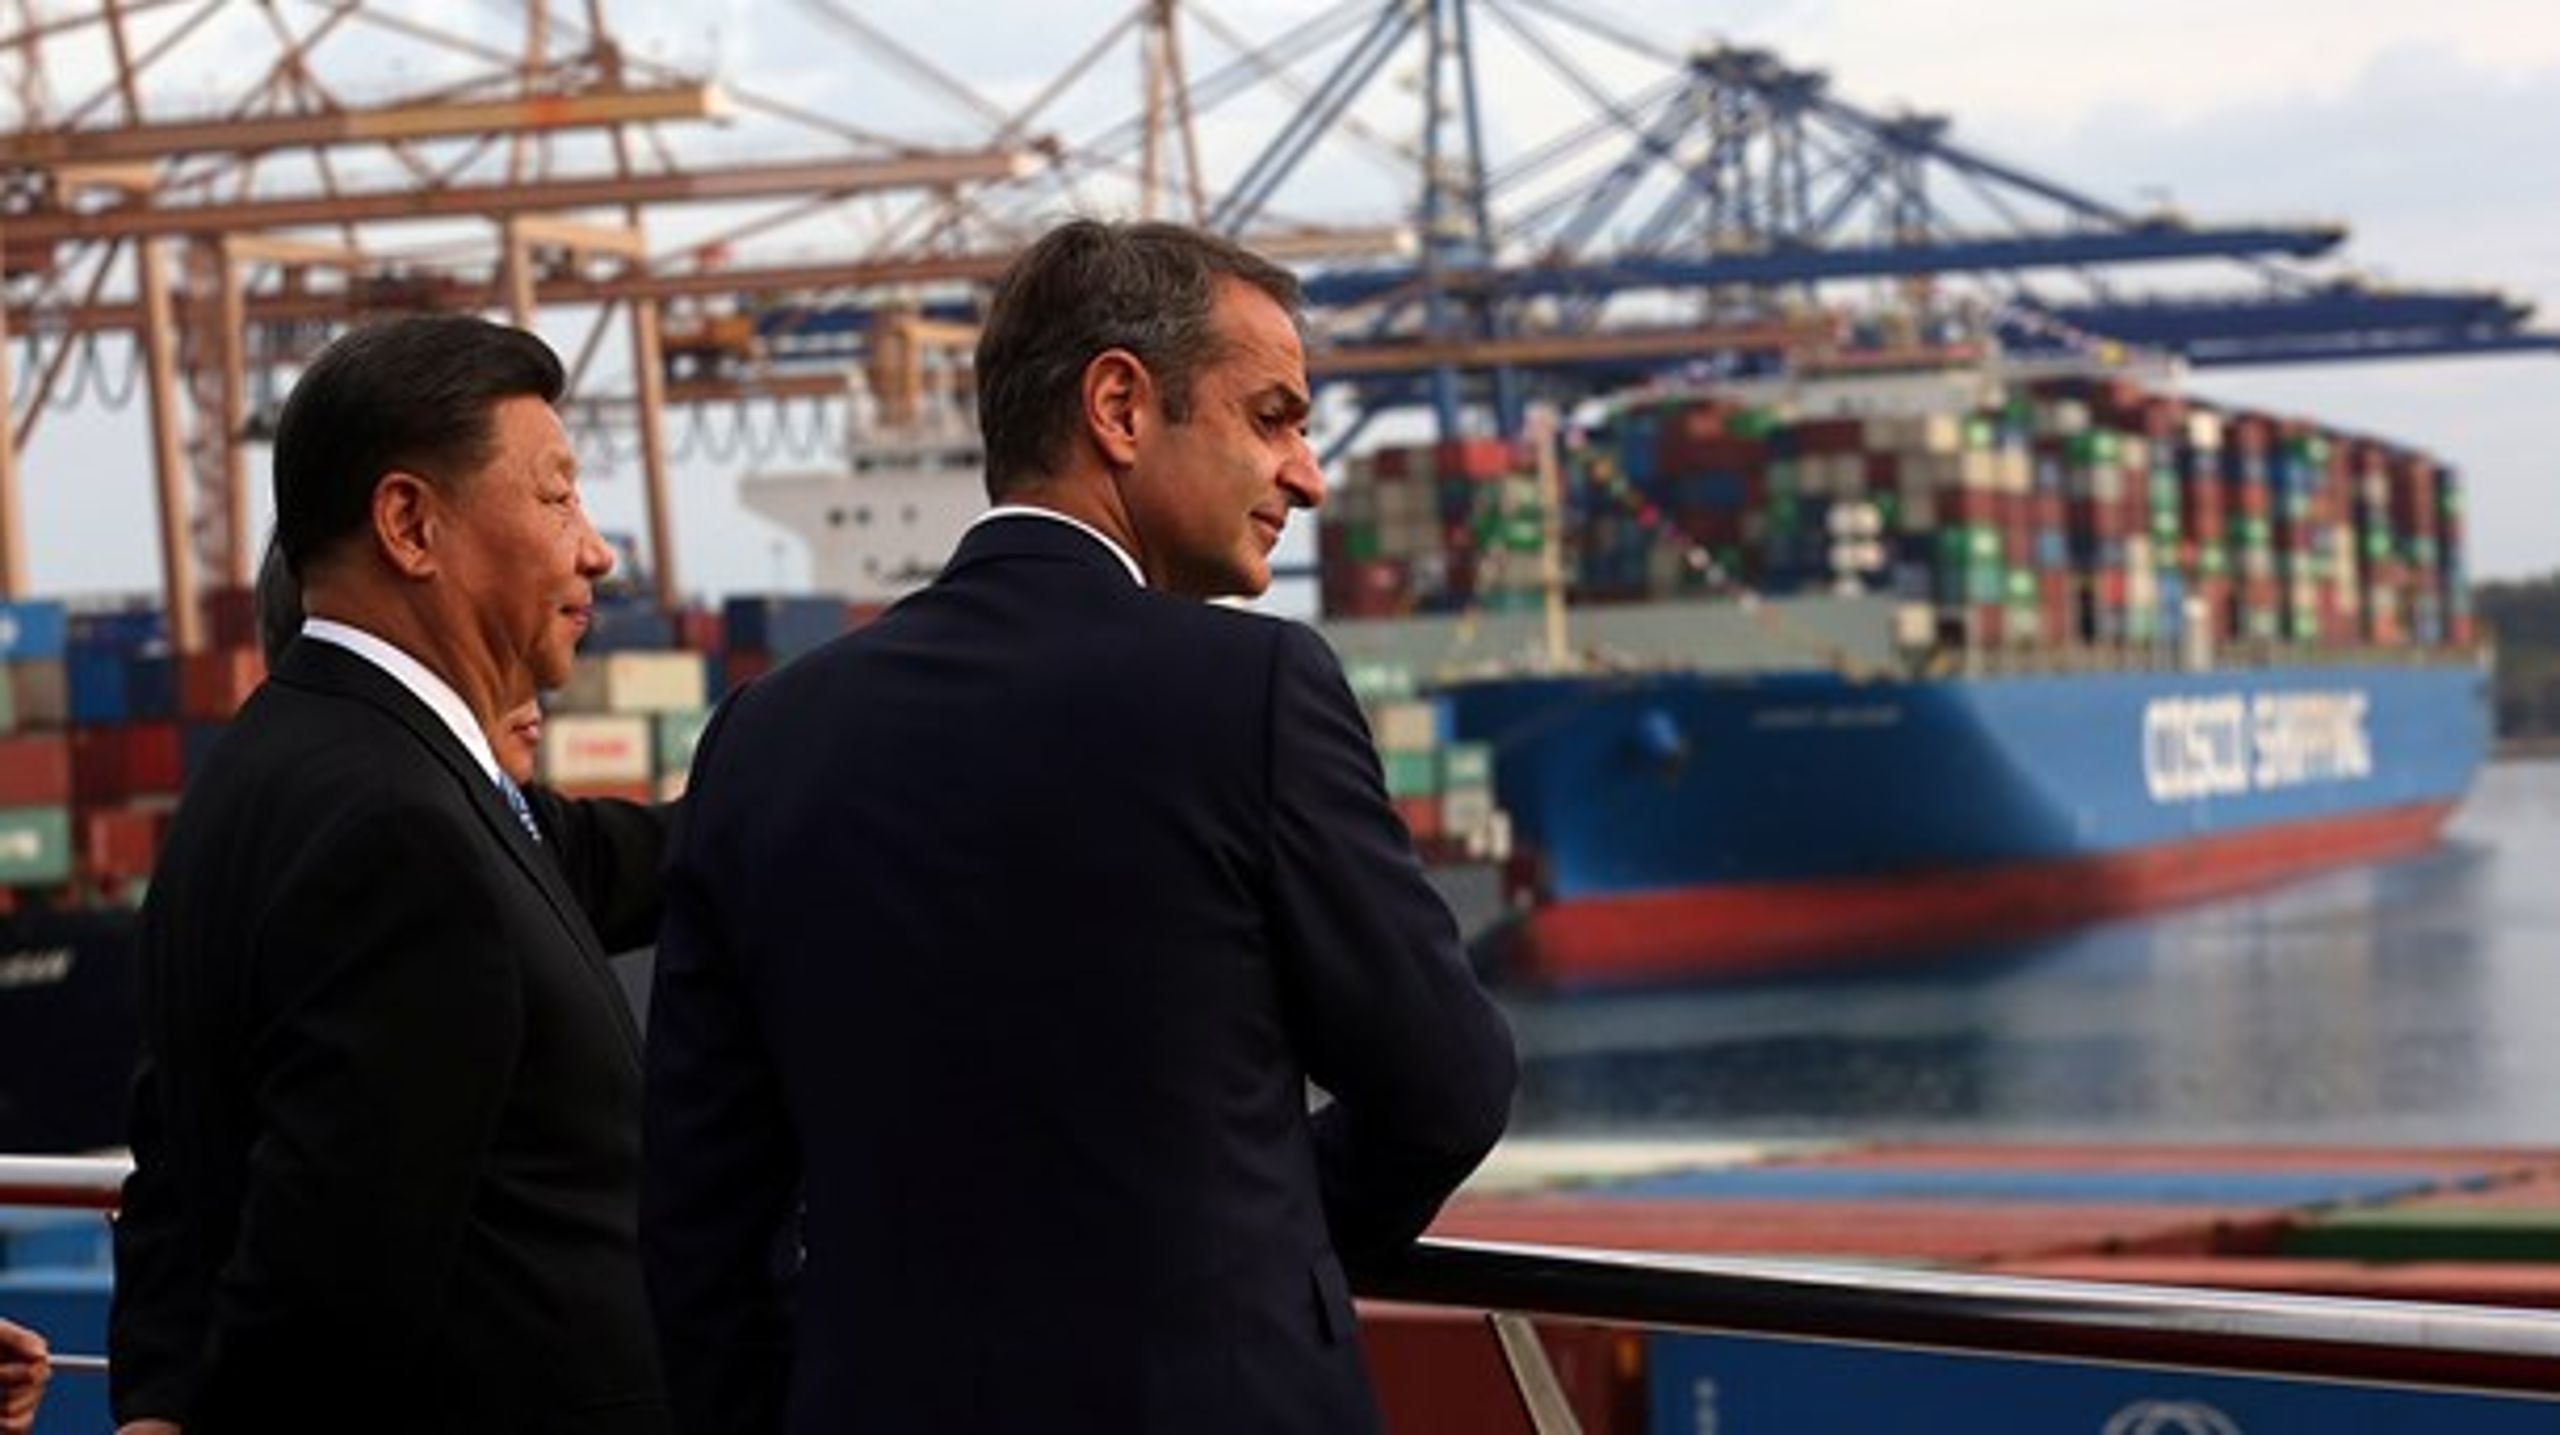 I Grækenland har den&nbsp;statsejede kinesiske virksomhed Cosco opkøbt landets største havn, Piræus. Her ses Kinas præsident, Xi Jinping, og Grækenlands premierminister, Kyriakos Mitsotakis.